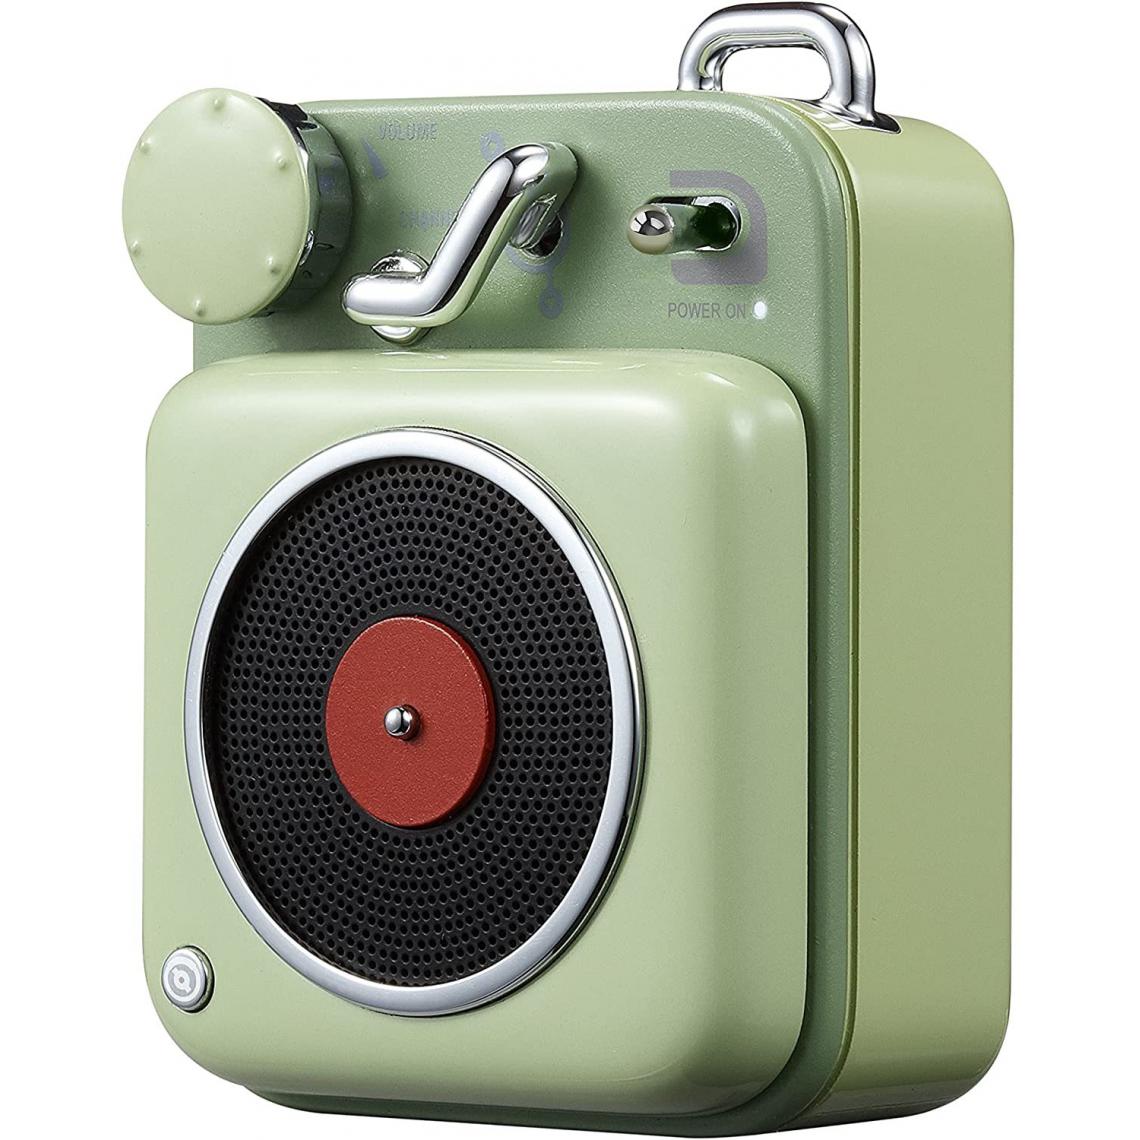 Chrono - Rétro Haut-Parleur Bluetooth- Button Haut-Parleur sans Fil Bluetooth-Portable Rétro Vintage Loudspeaker-Enceinte Portable Bluetooth pour Maison Bureau Cuisine Voyages et l'extérieur,Vert - Enceintes Hifi